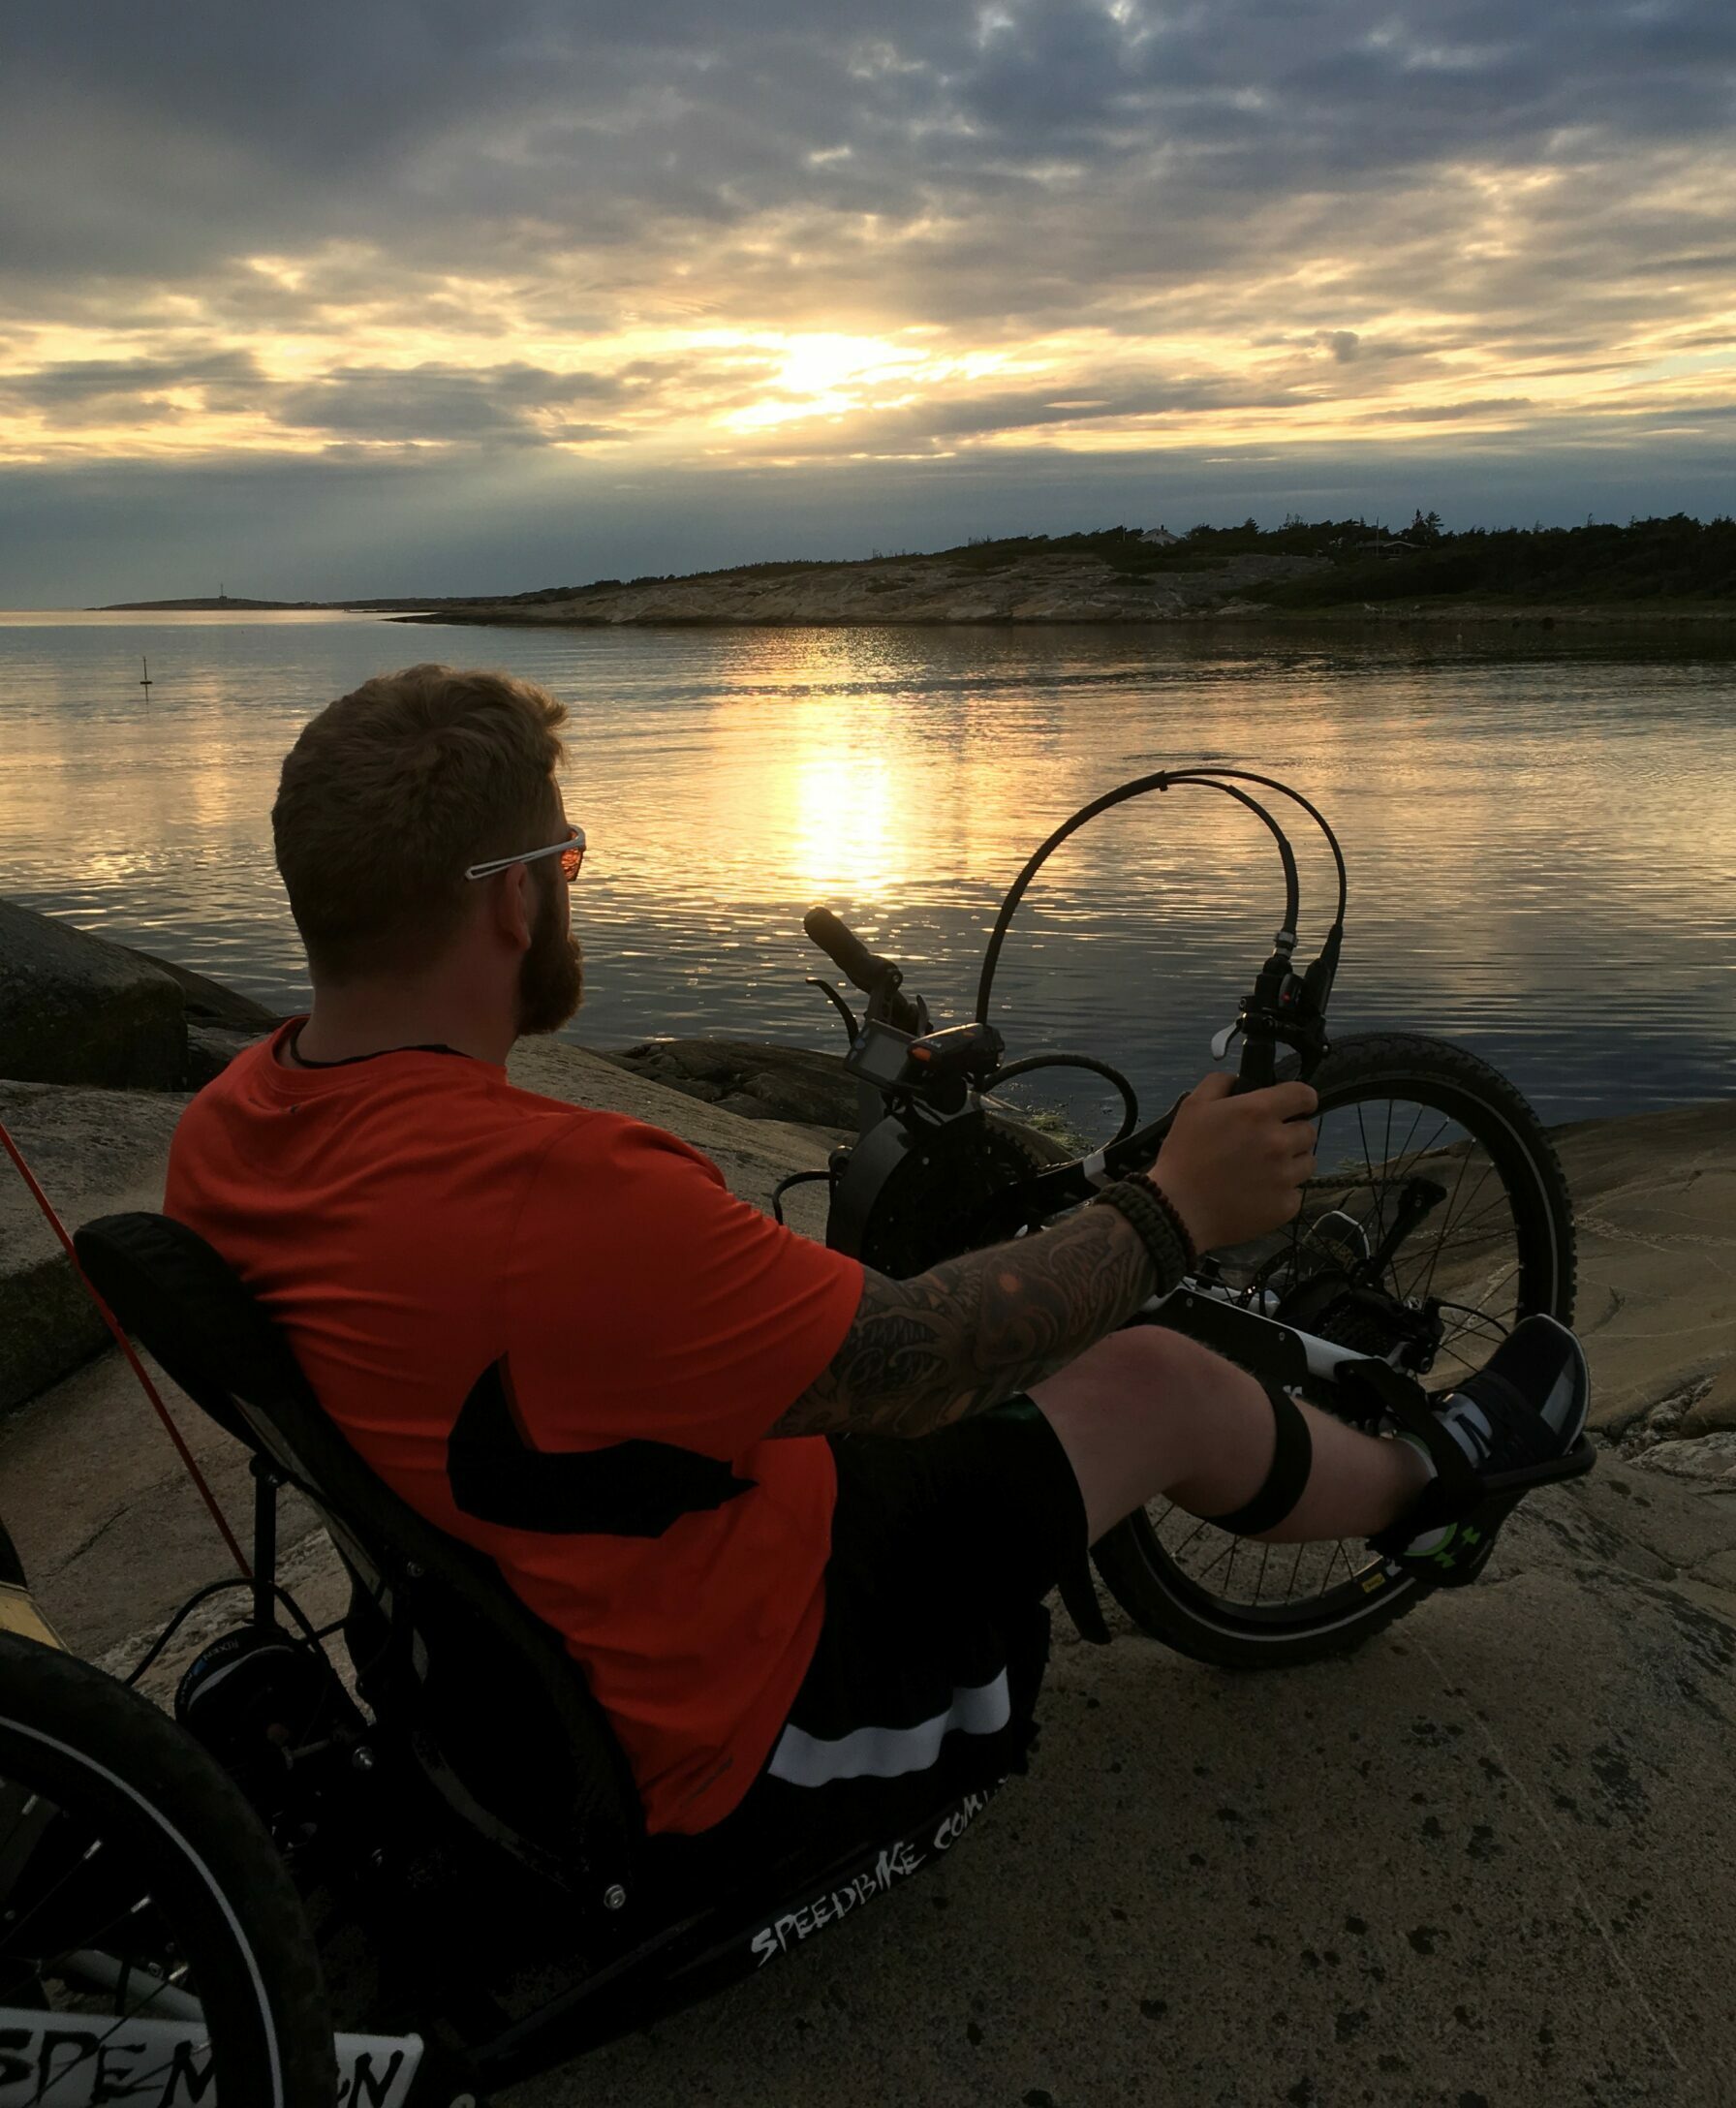 Mann på håndsykkel ved sjøen i solnedgang. Foto.